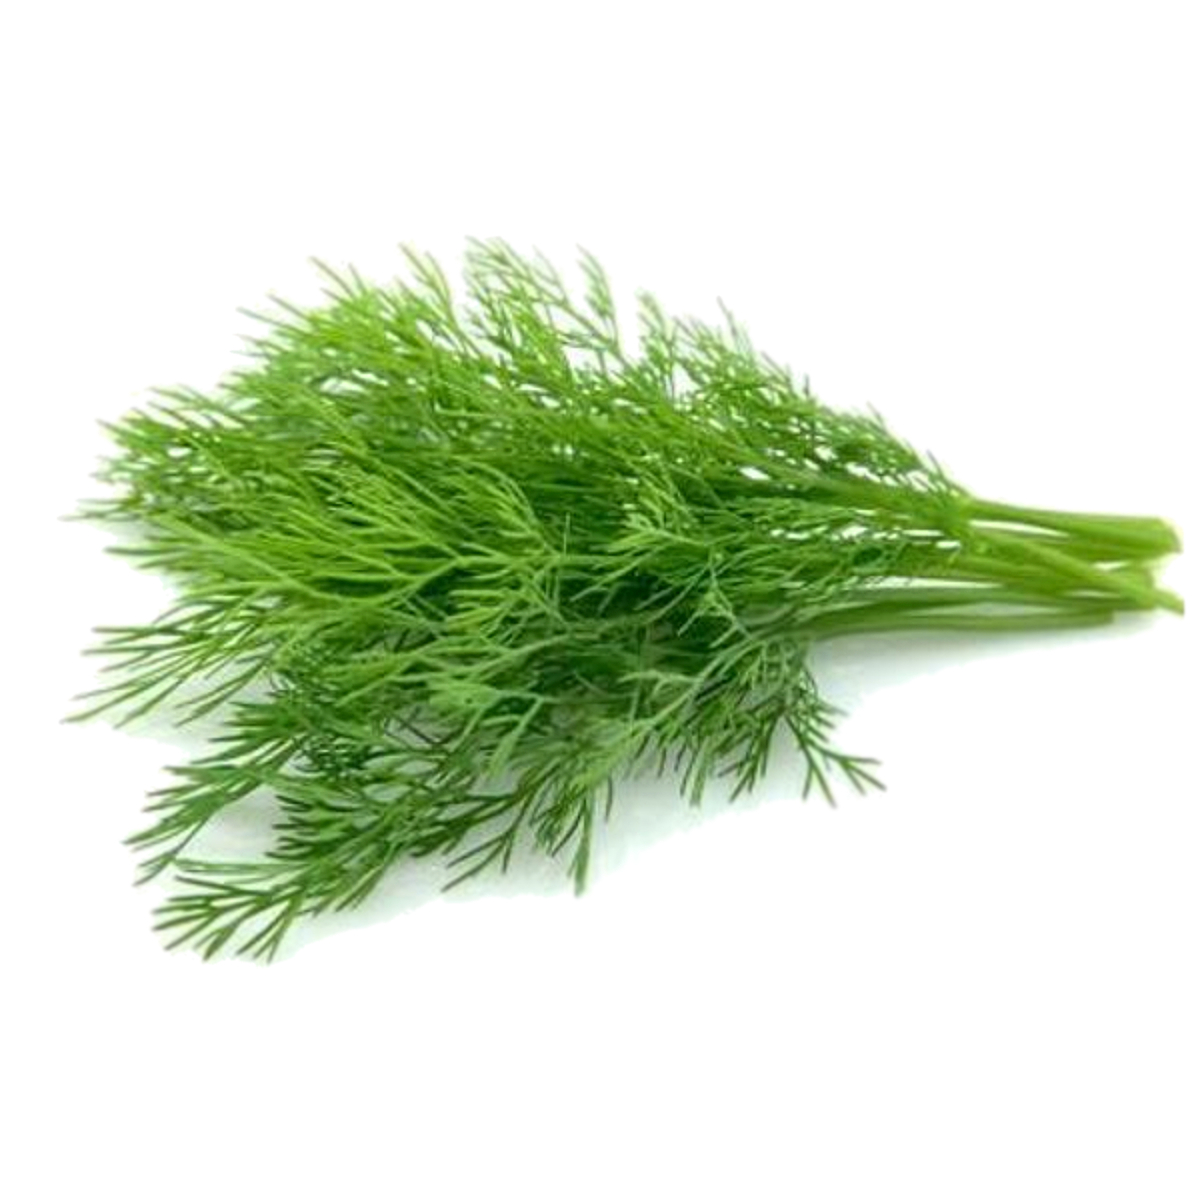 اشتري قم بشراء أوراق الشبت 200 جم وزن تقريبي Online at Best Price من الموقع - من لولو هايبر ماركت Local Herbs / Leaves في السعودية